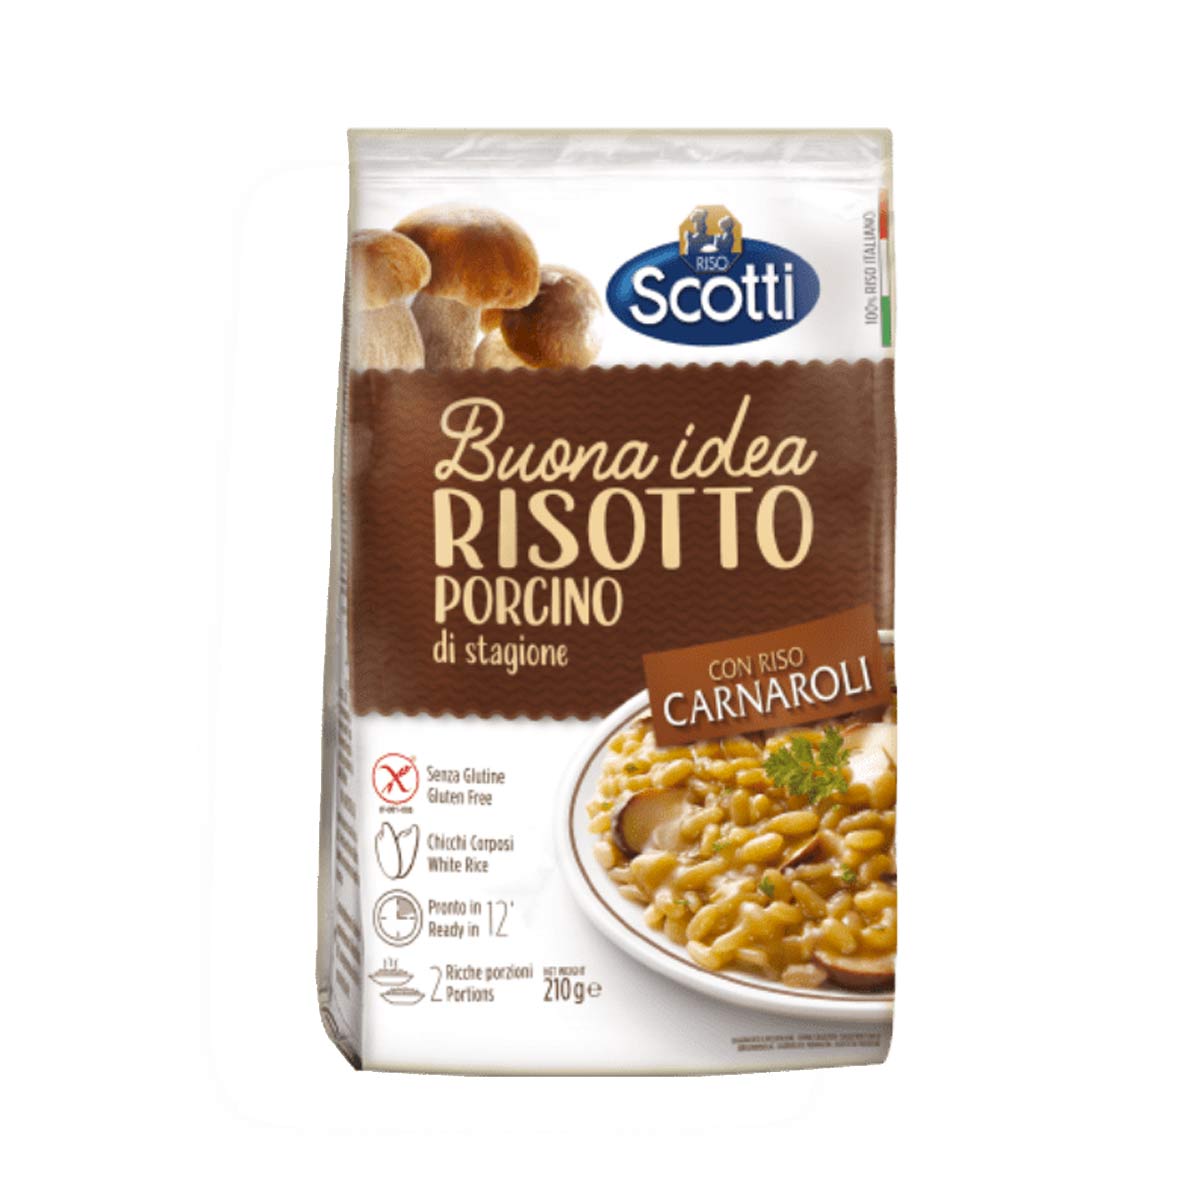 Porcini Risotto by Riso Scotti, 7.4 oz (210 g)